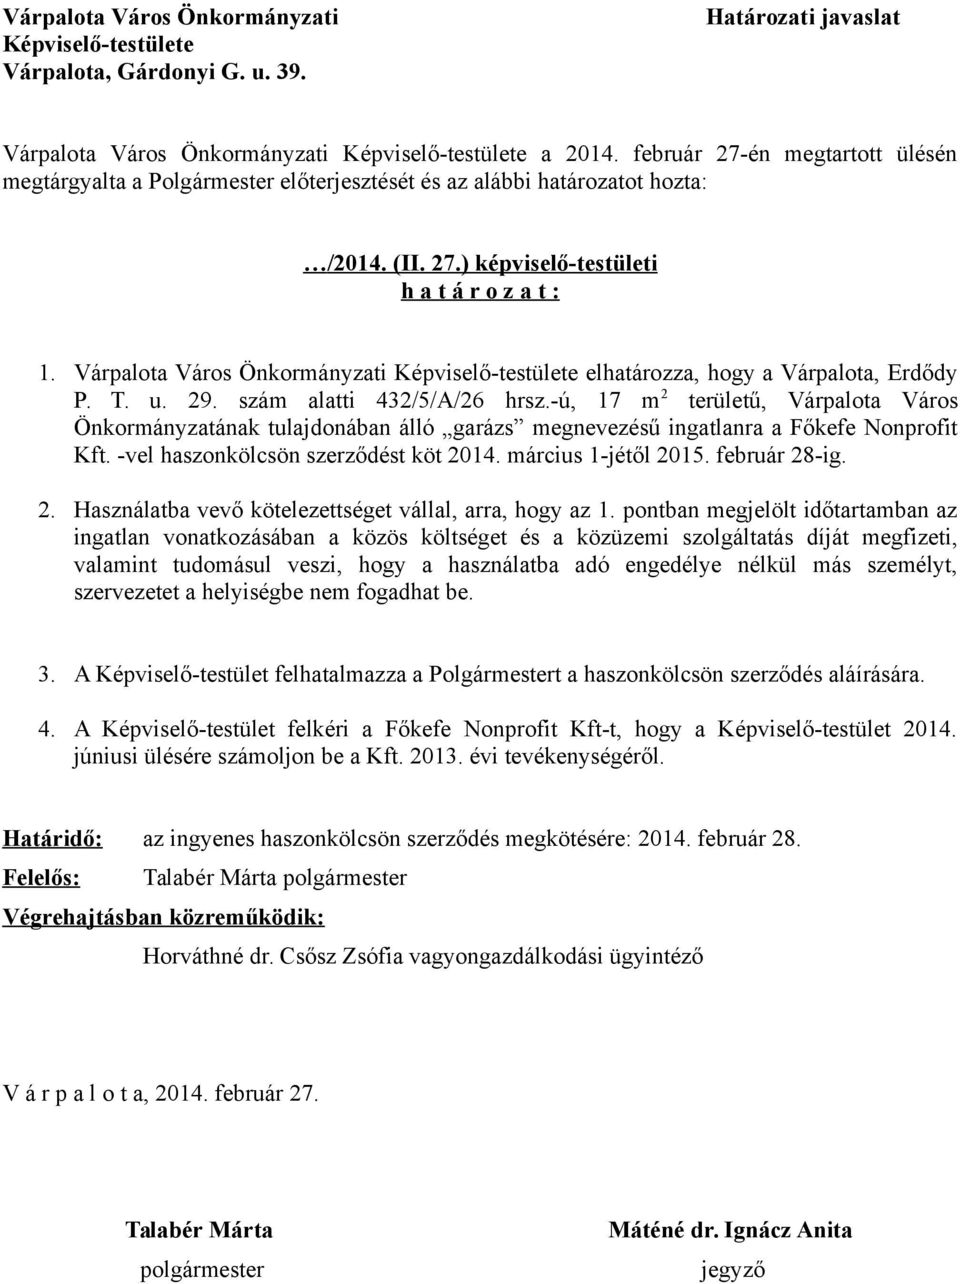 Várpalota Város Önkormányzati Képviselő-testülete elhatározza, hogy a Várpalota, Erdődy P. T. u. 29. szám alatti 432/5/A/26 hrsz.